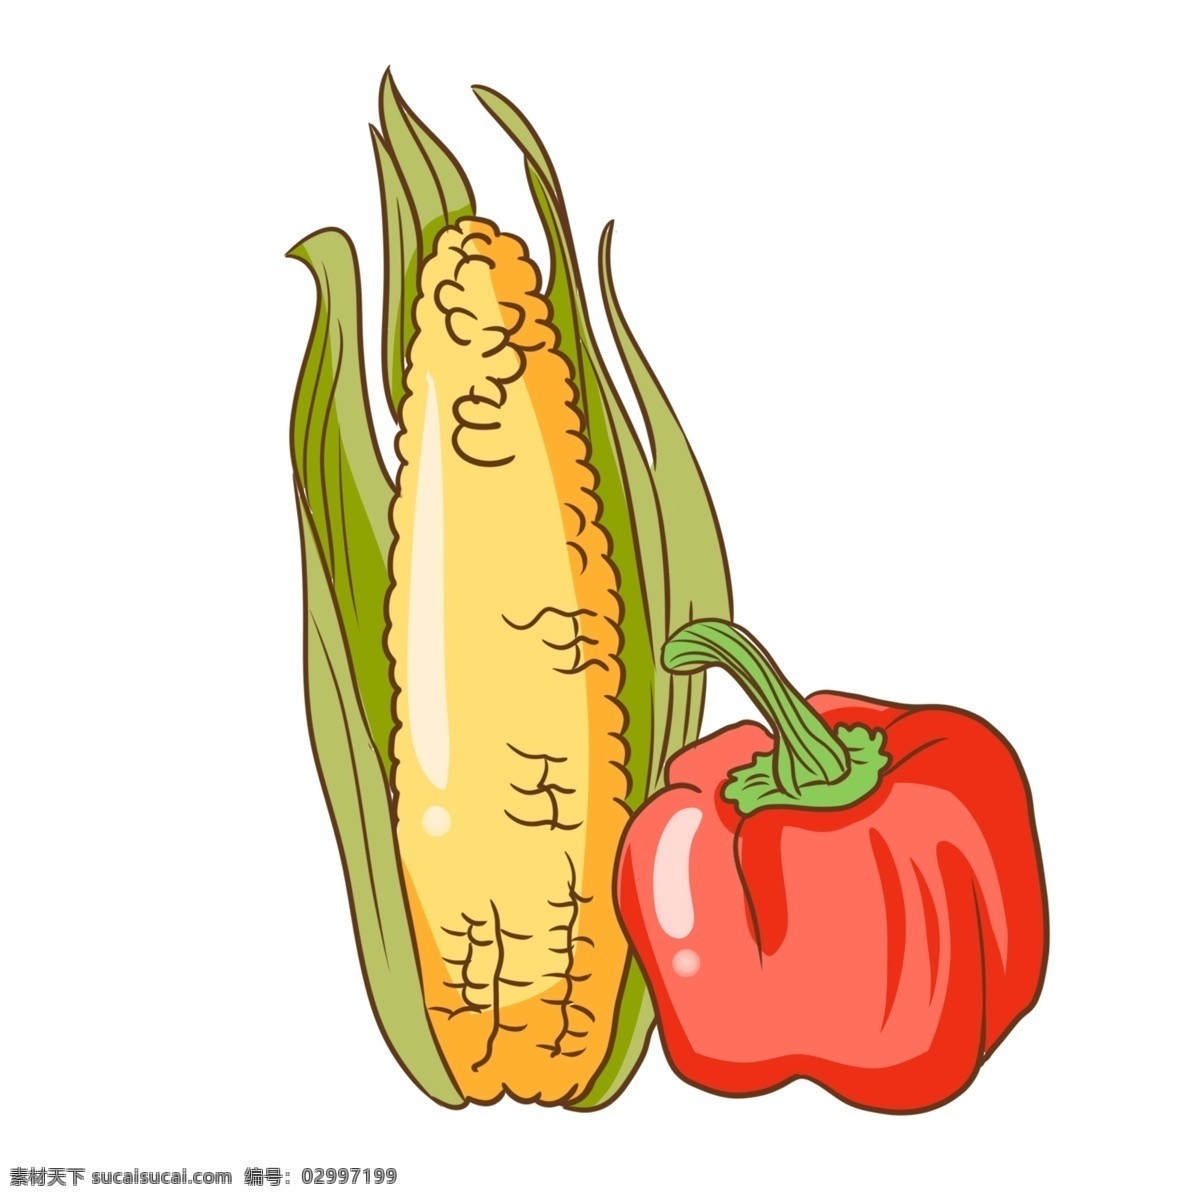 红色 菜 辣椒 插画 卡通菜辣椒 黄色的玉米 绿色的叶子 红色的菜辣椒 漂亮的菜辣椒 手绘菜辣椒